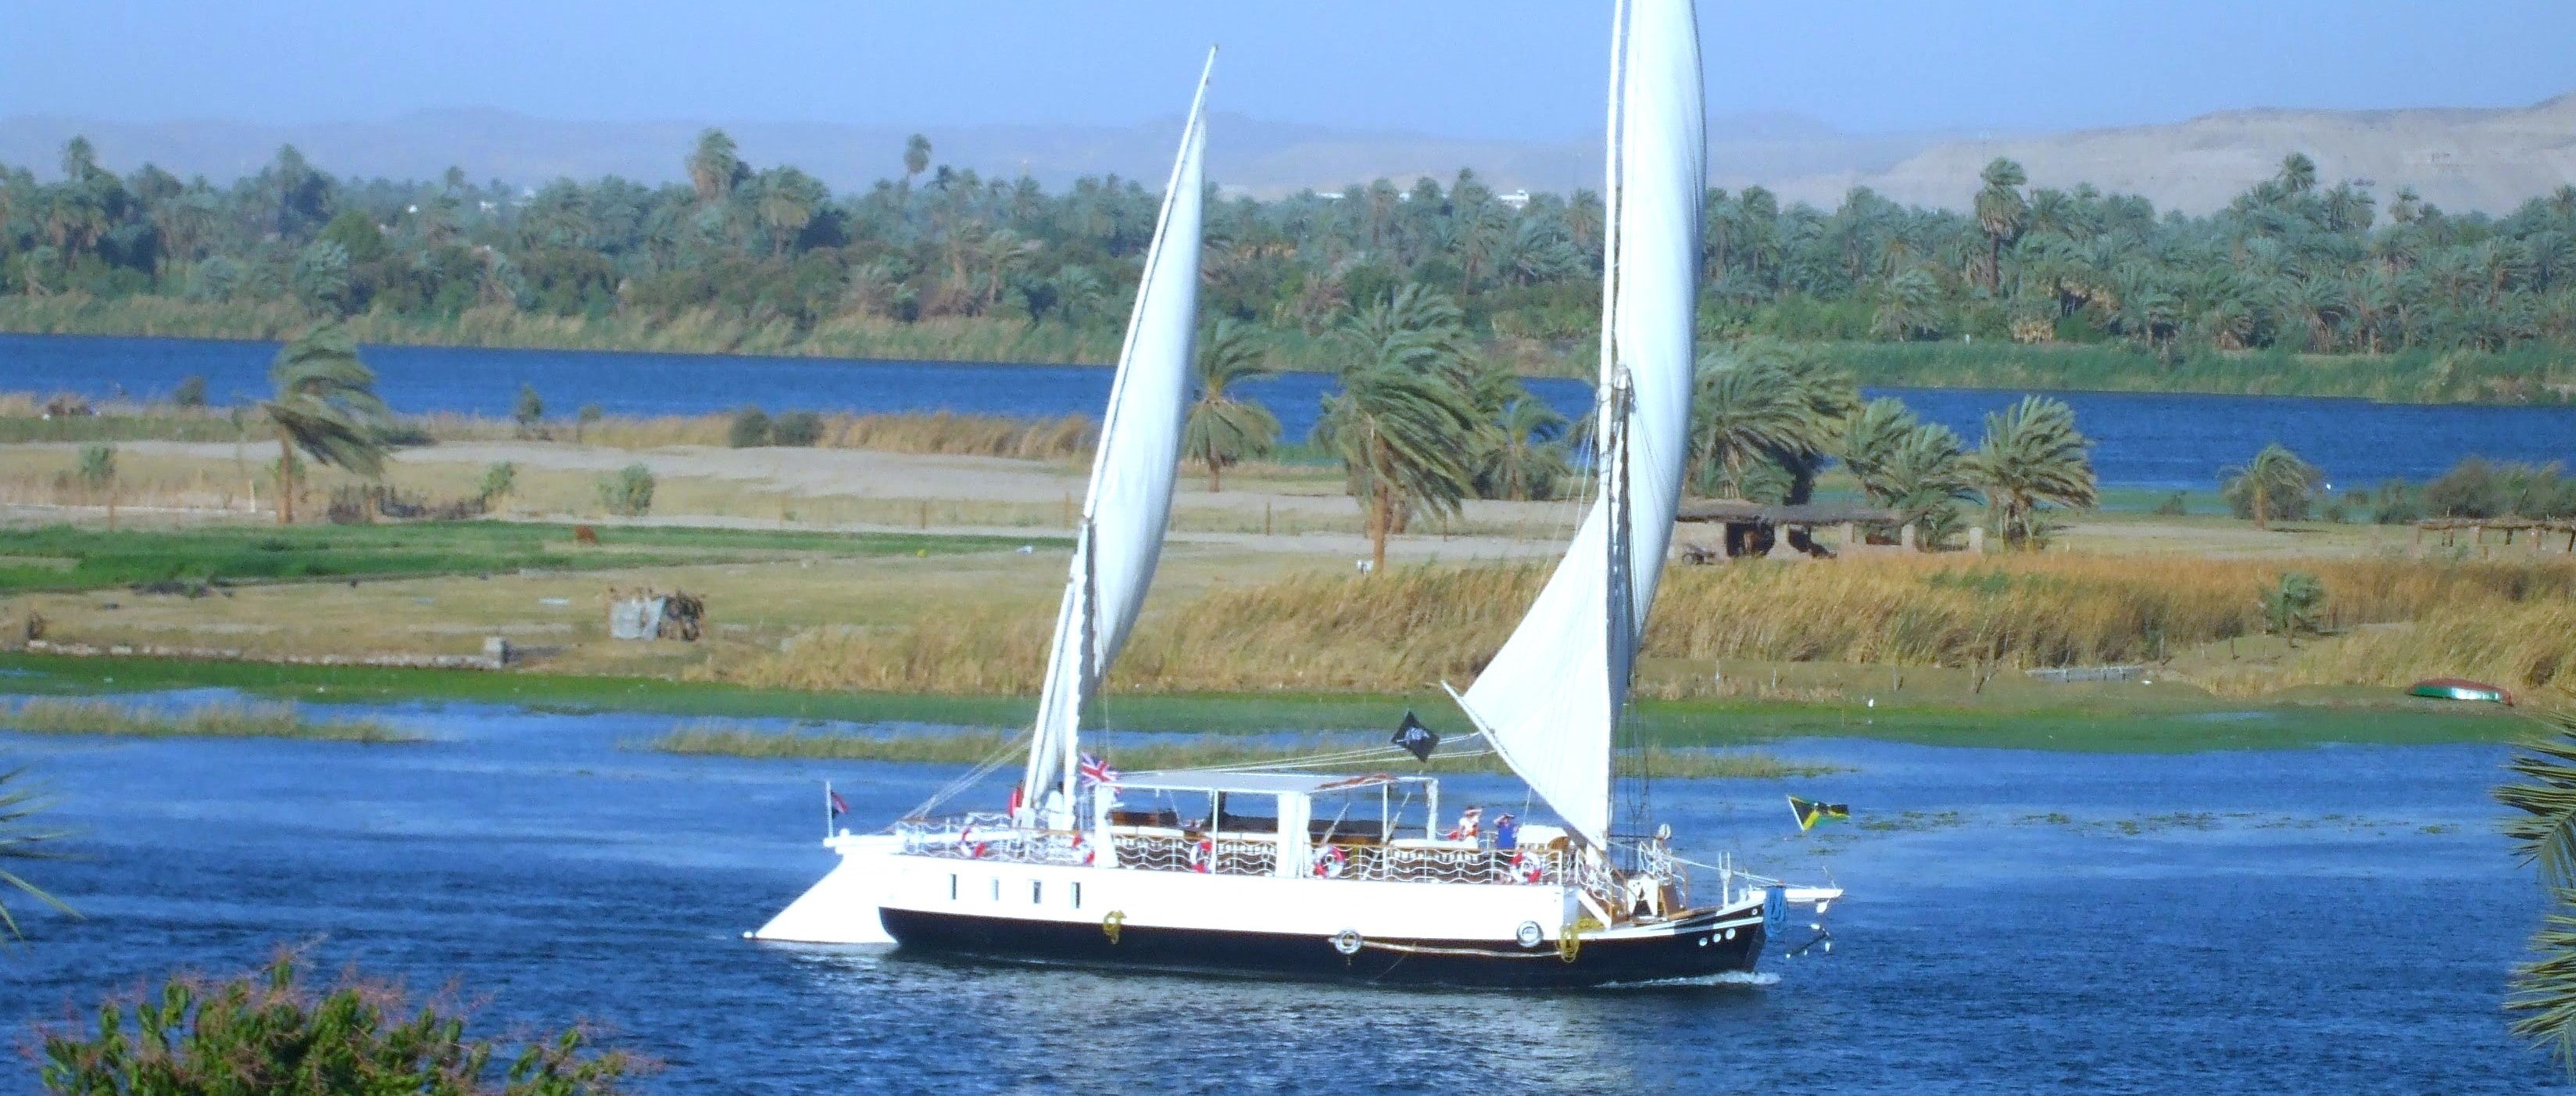 Load video: Sailing the Nile